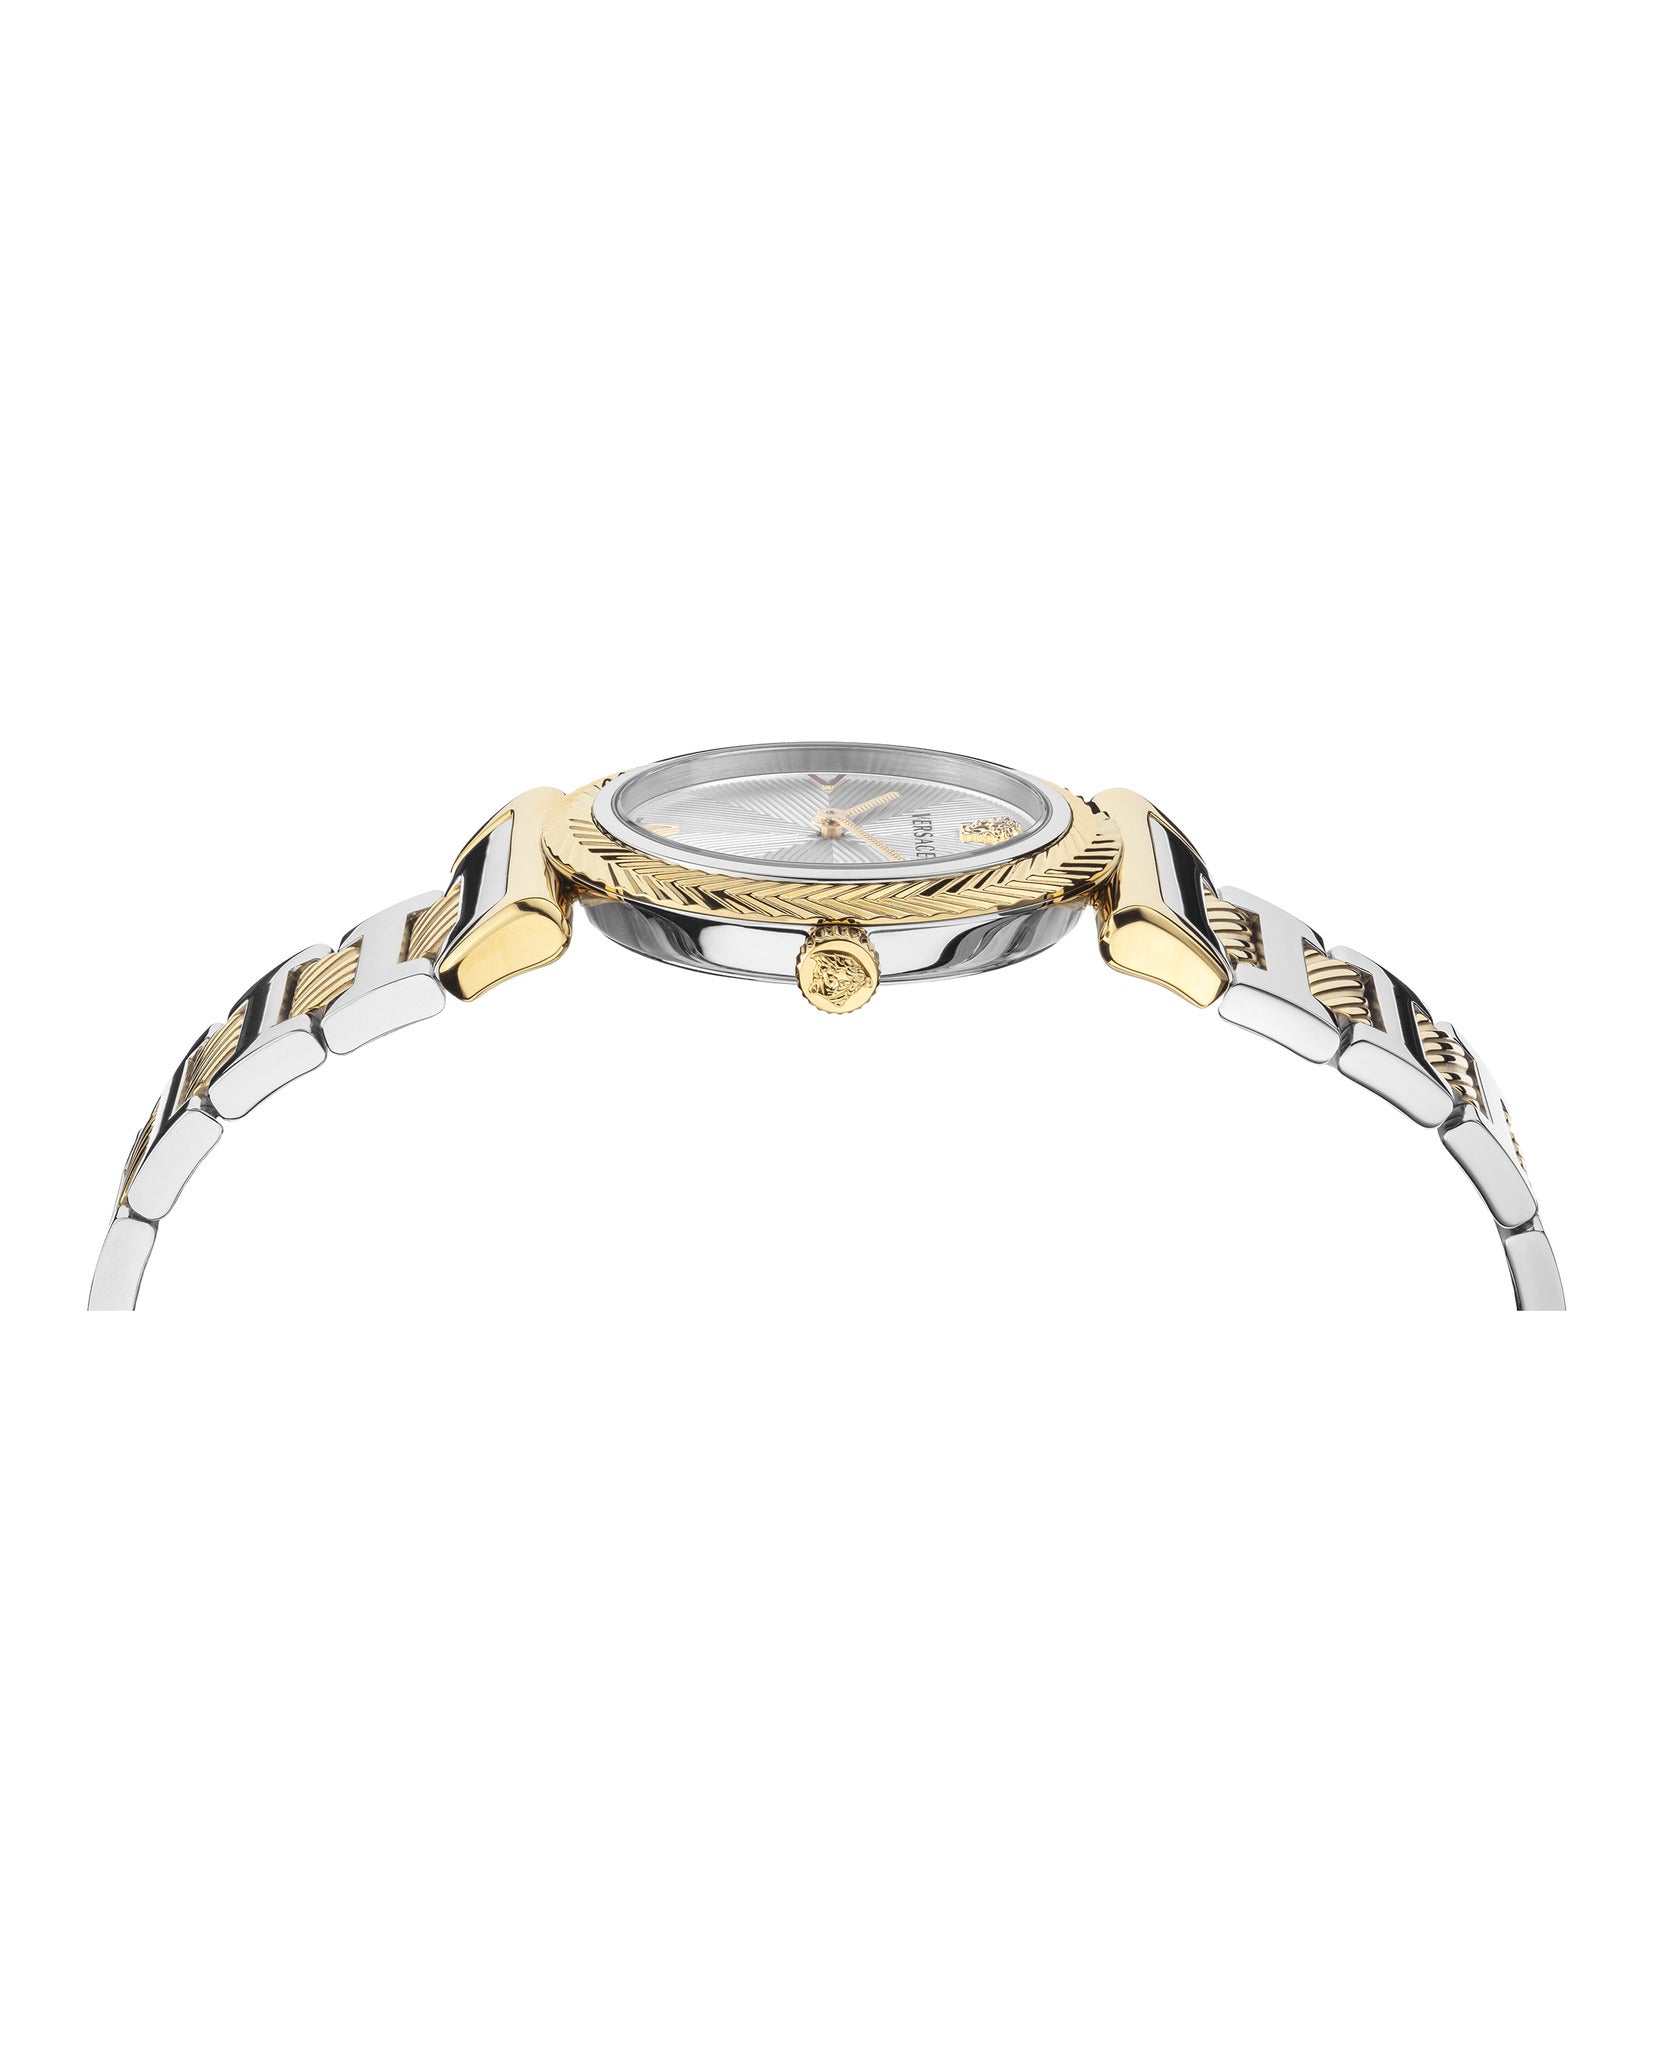 V-Motif Bracelet Watch